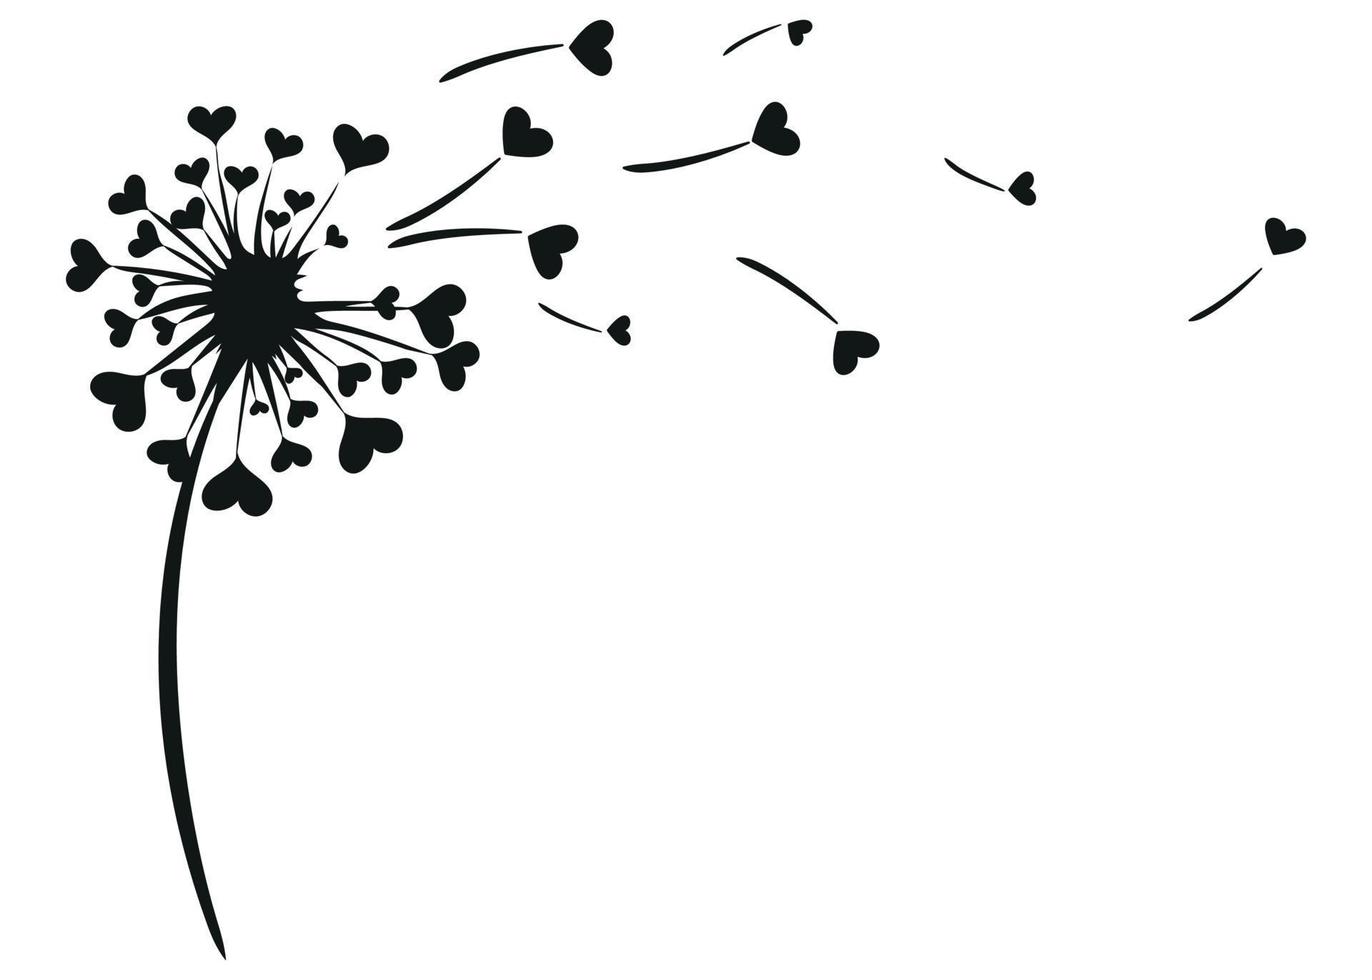 Löwenzahnblume mit Herzliebeskonzept lokalisiert auf weißem Hintergrund vektor